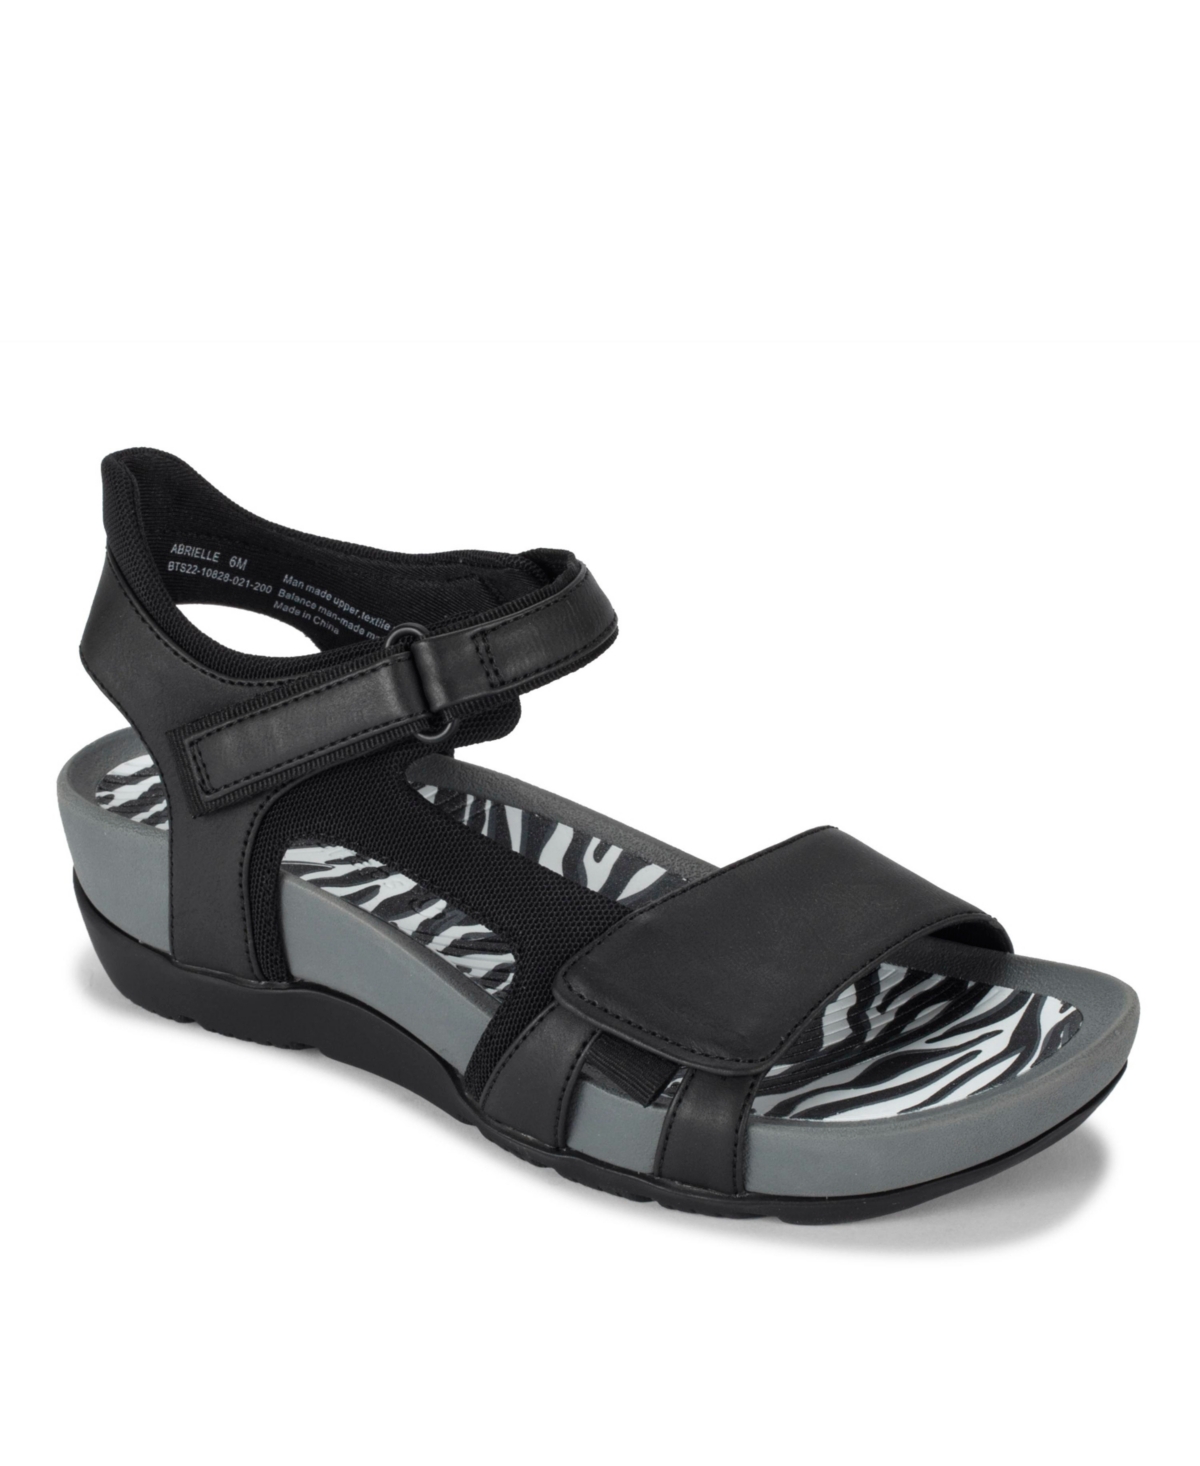 Women's Abrielle Sporty Sandals - Black